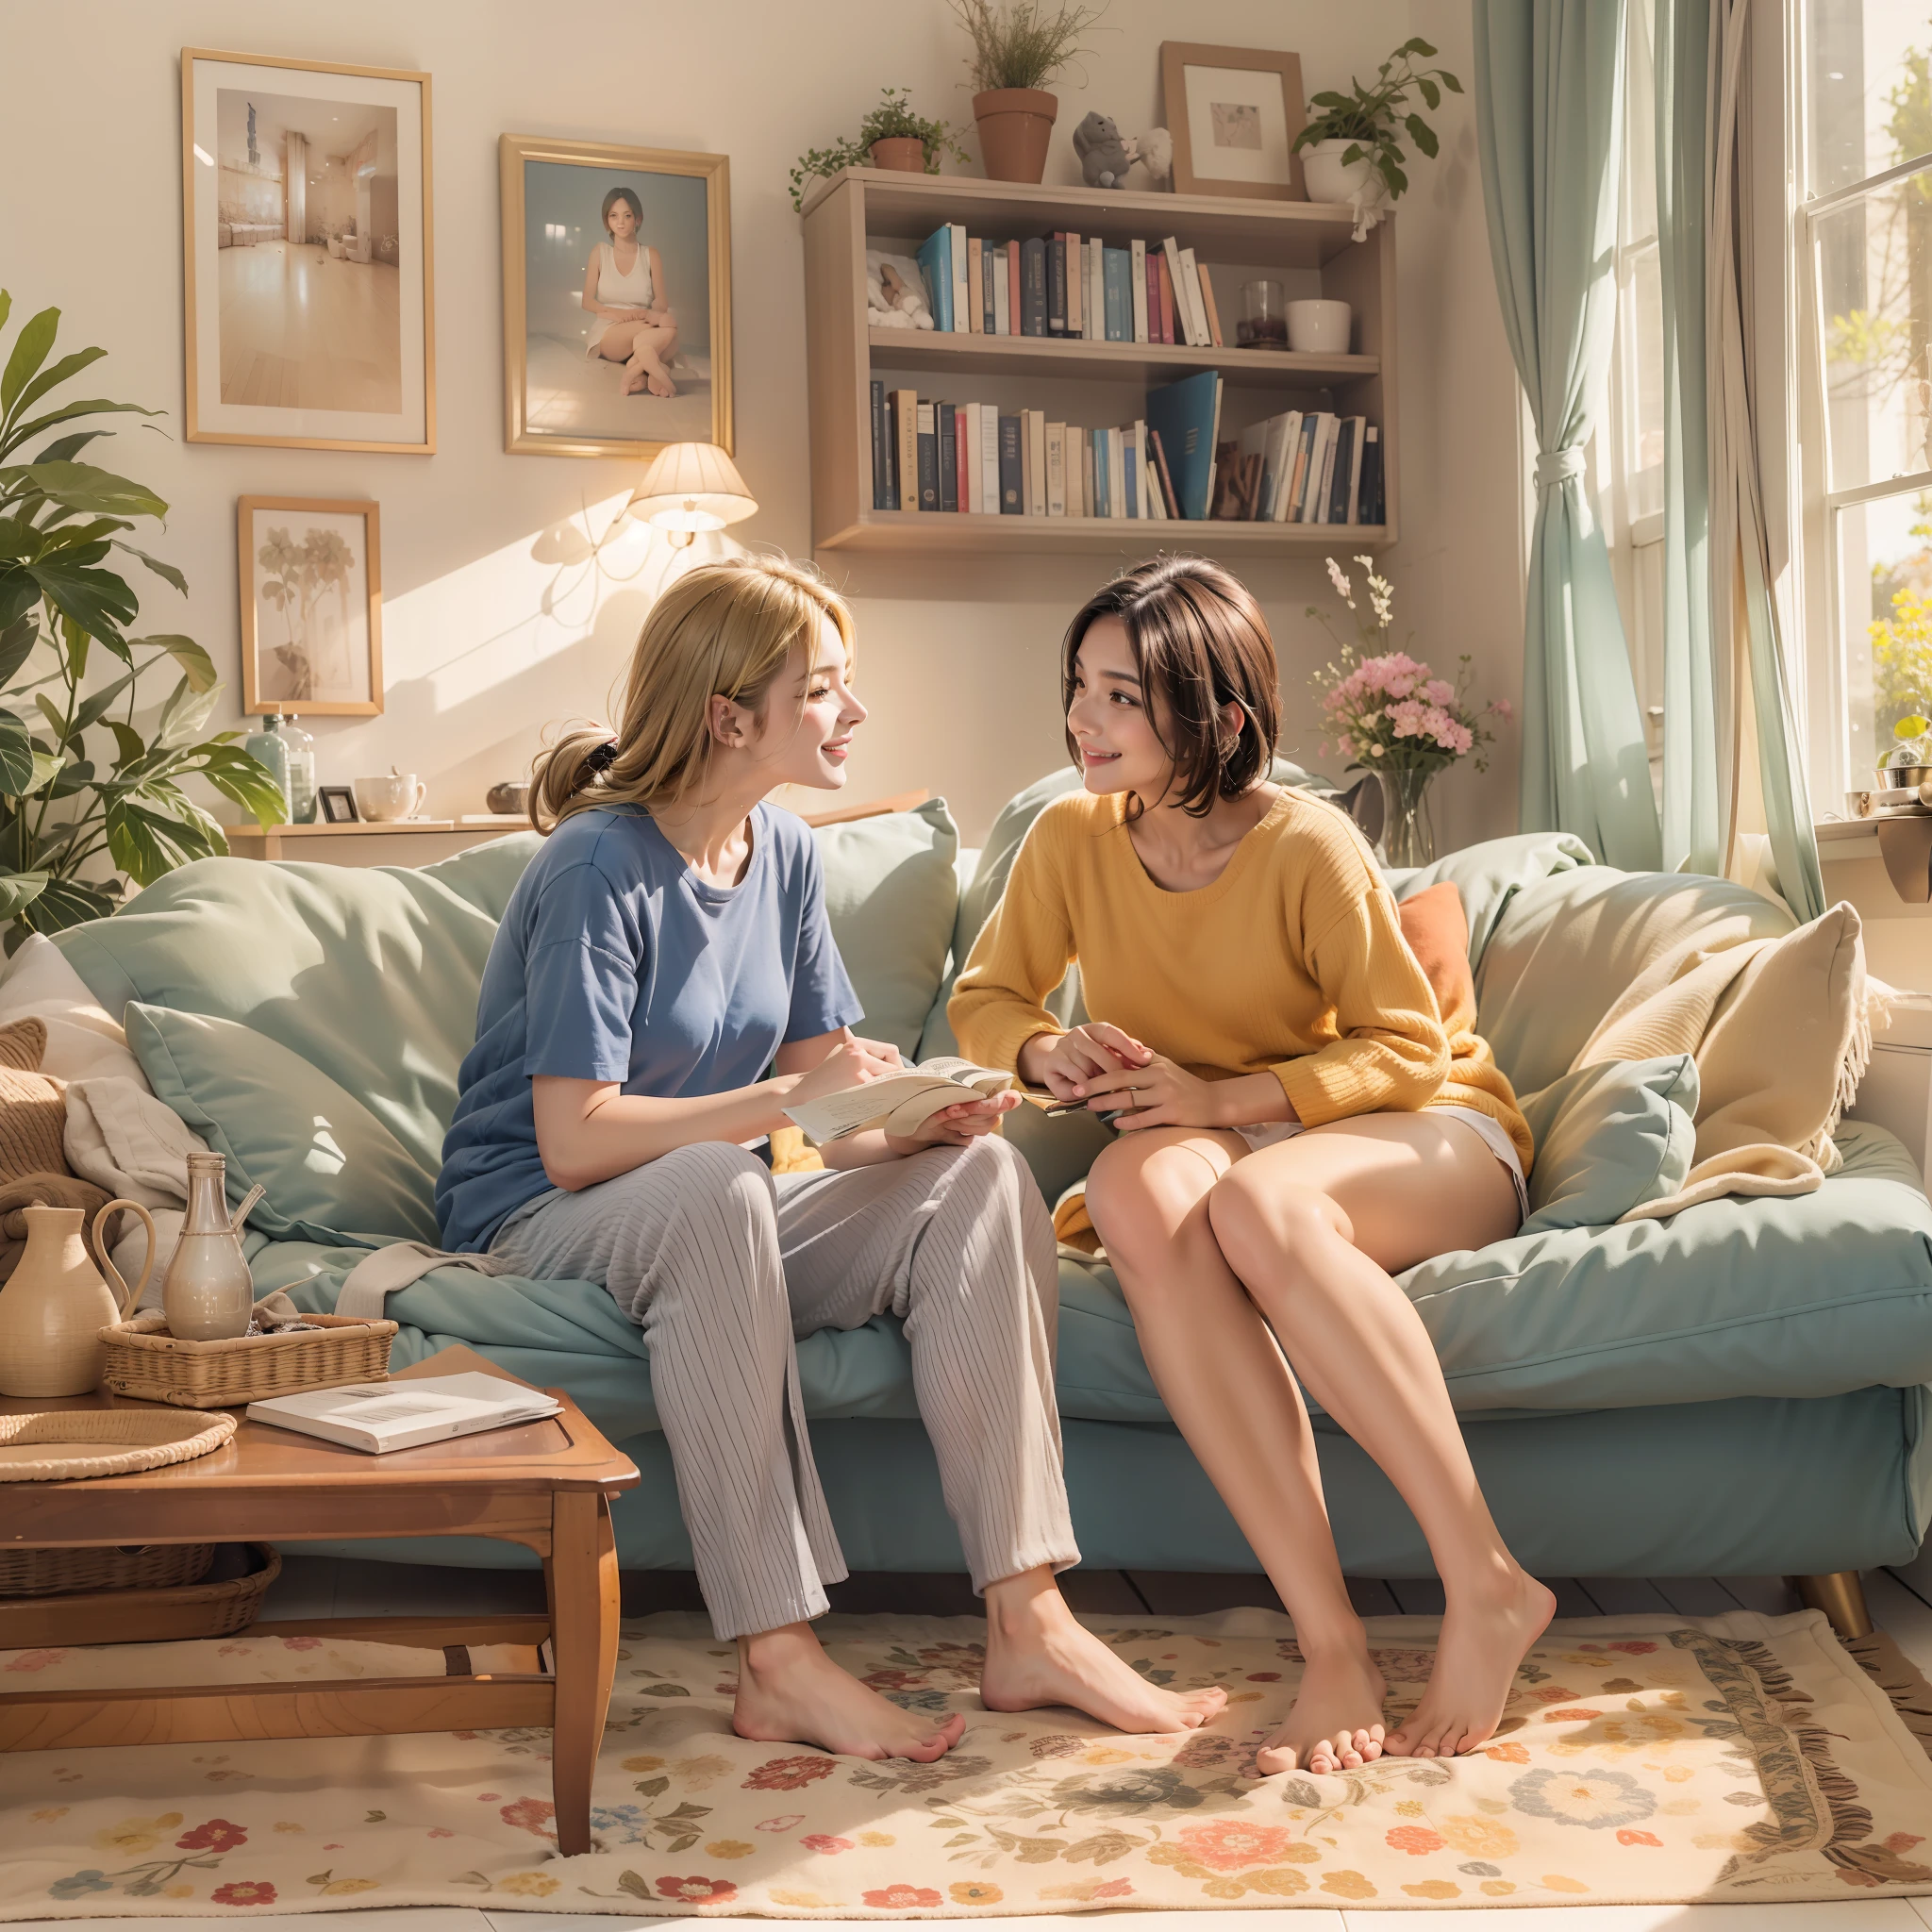 zwei Frauen, bequeme T-Shirts und Höschen tragen, vertieft in ein Gespräch lächelnd in einem gemütlichen Familienzimmer an einem ruhigen Morgen. Eine Frau sitzt anmutig auf dem Sofa, während der andere bequem auf dem Boden sitzt.